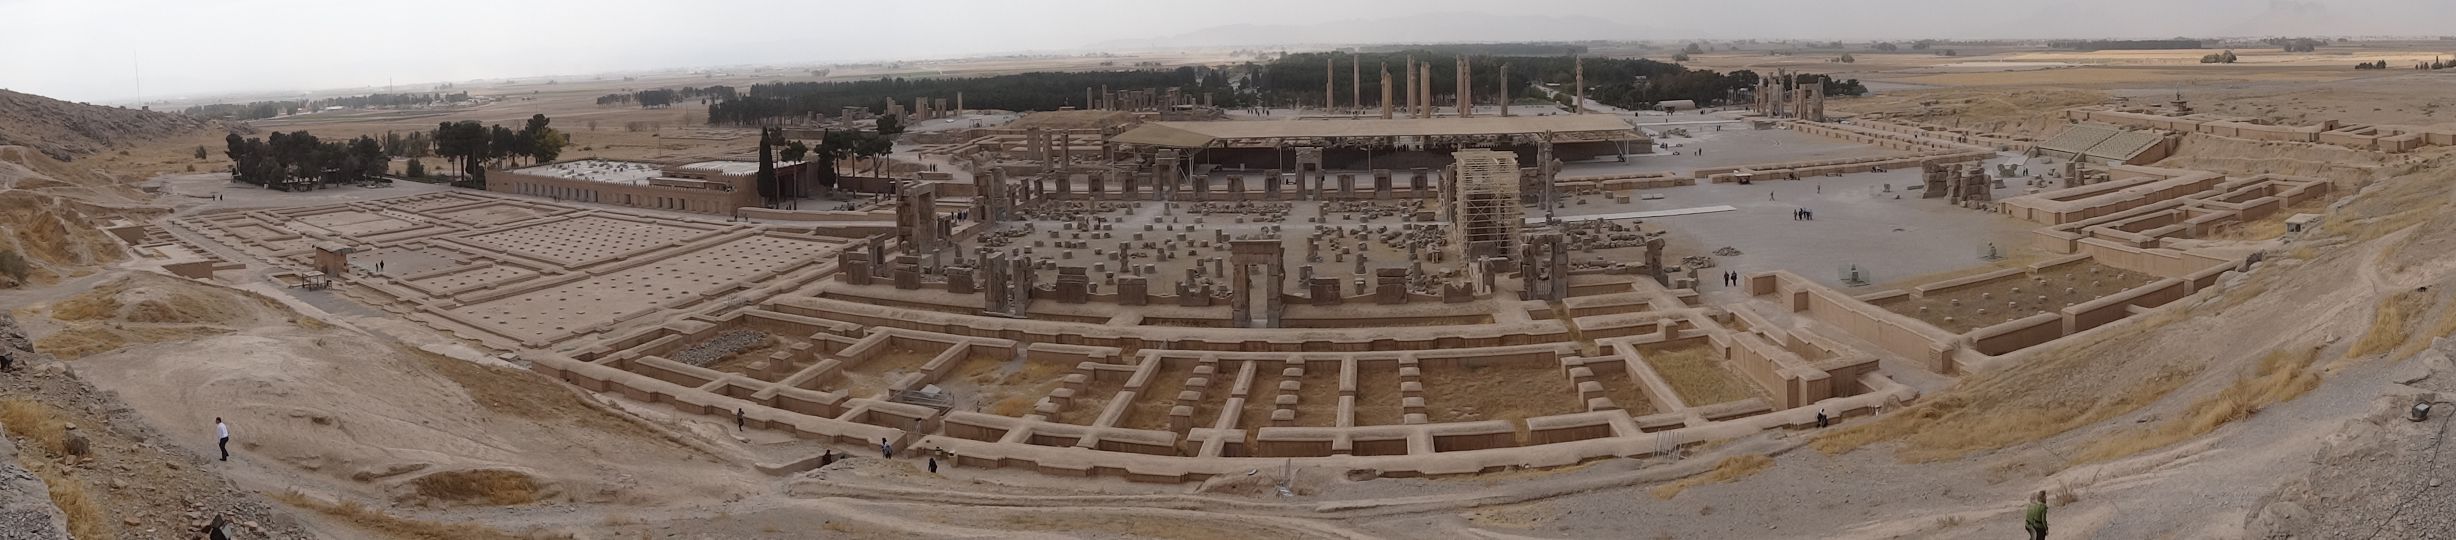 Persepolis - impressive as ruins, wonder what it looked like before